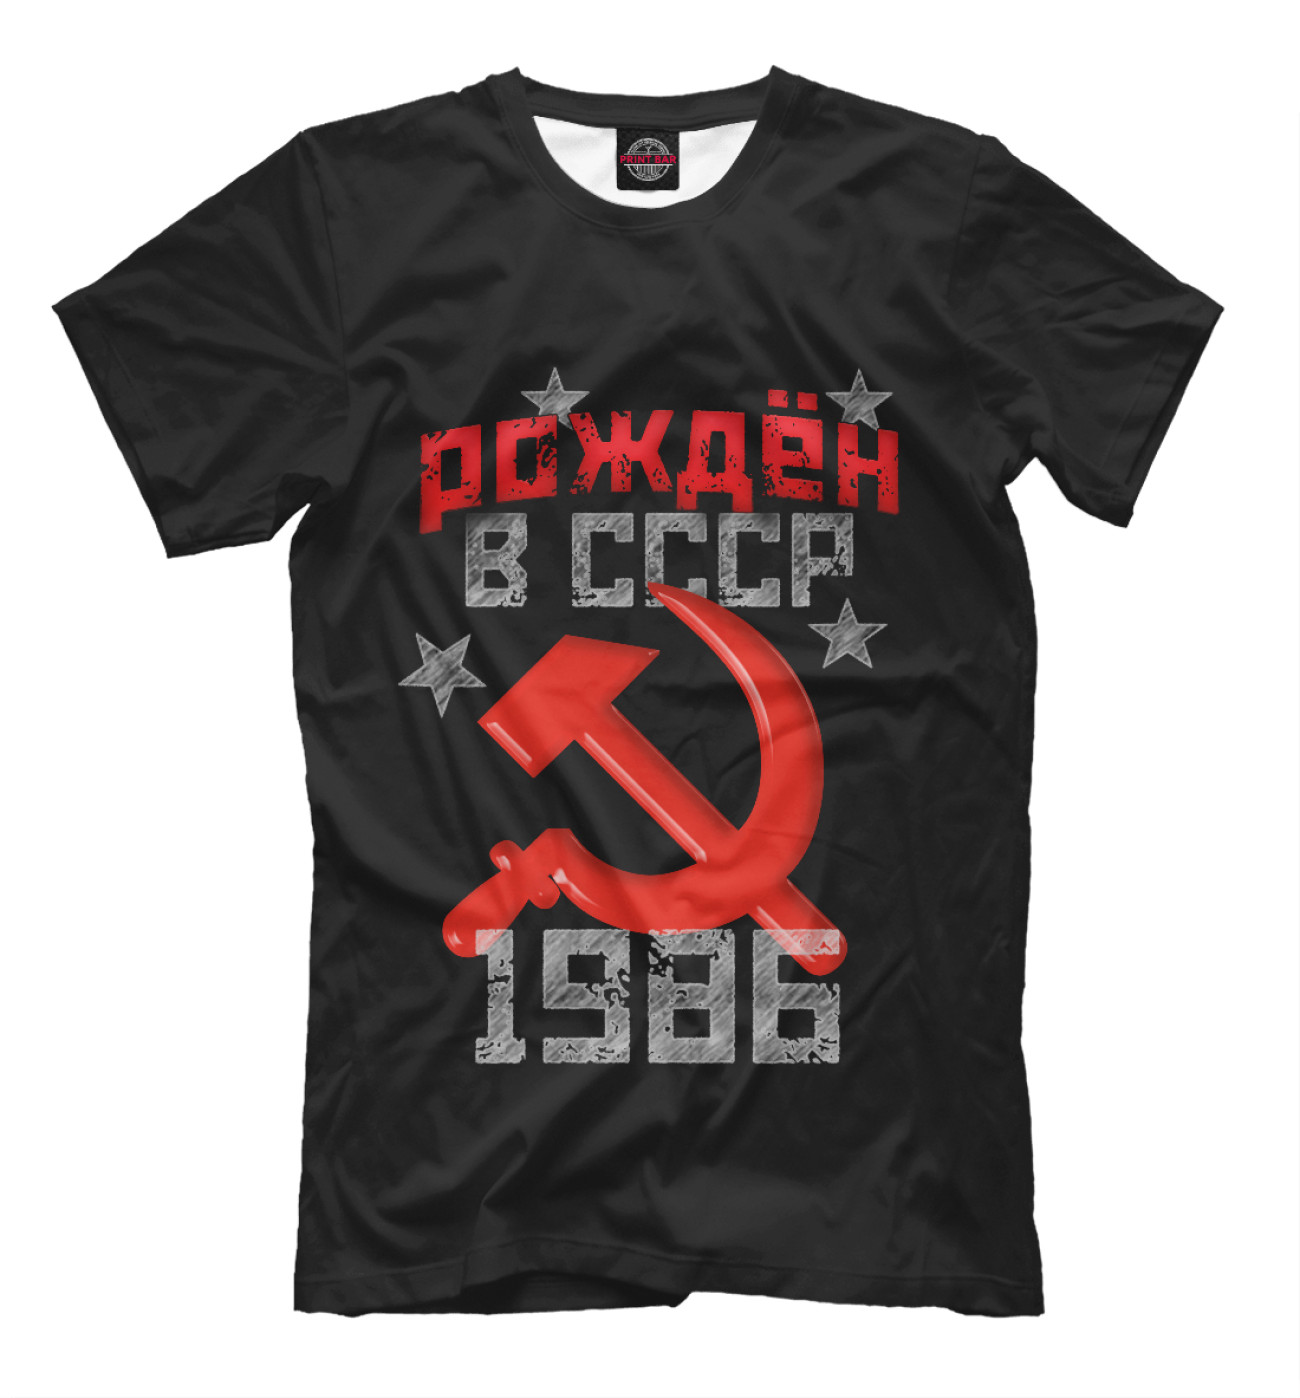 Мужская Футболка Рожден в СССР 1986, артикул: DVS-891850-fut-2